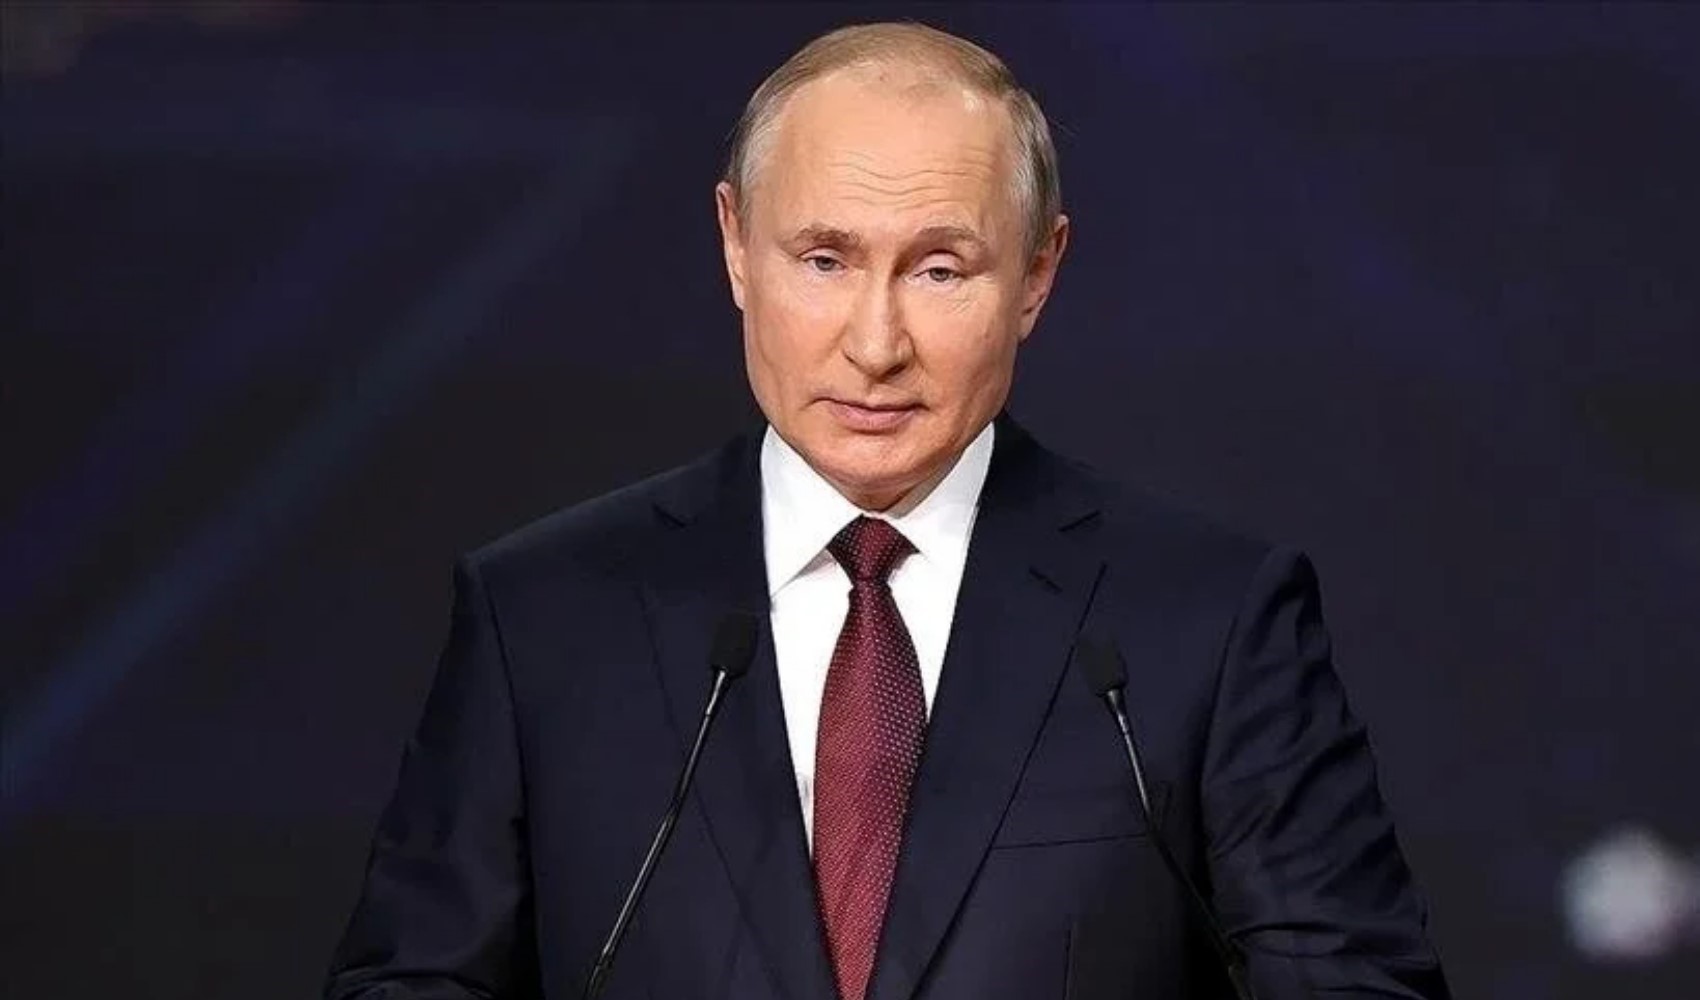 Putin, kazandığı seçim sonrası devlet başkanlığı mazbatasını aldı